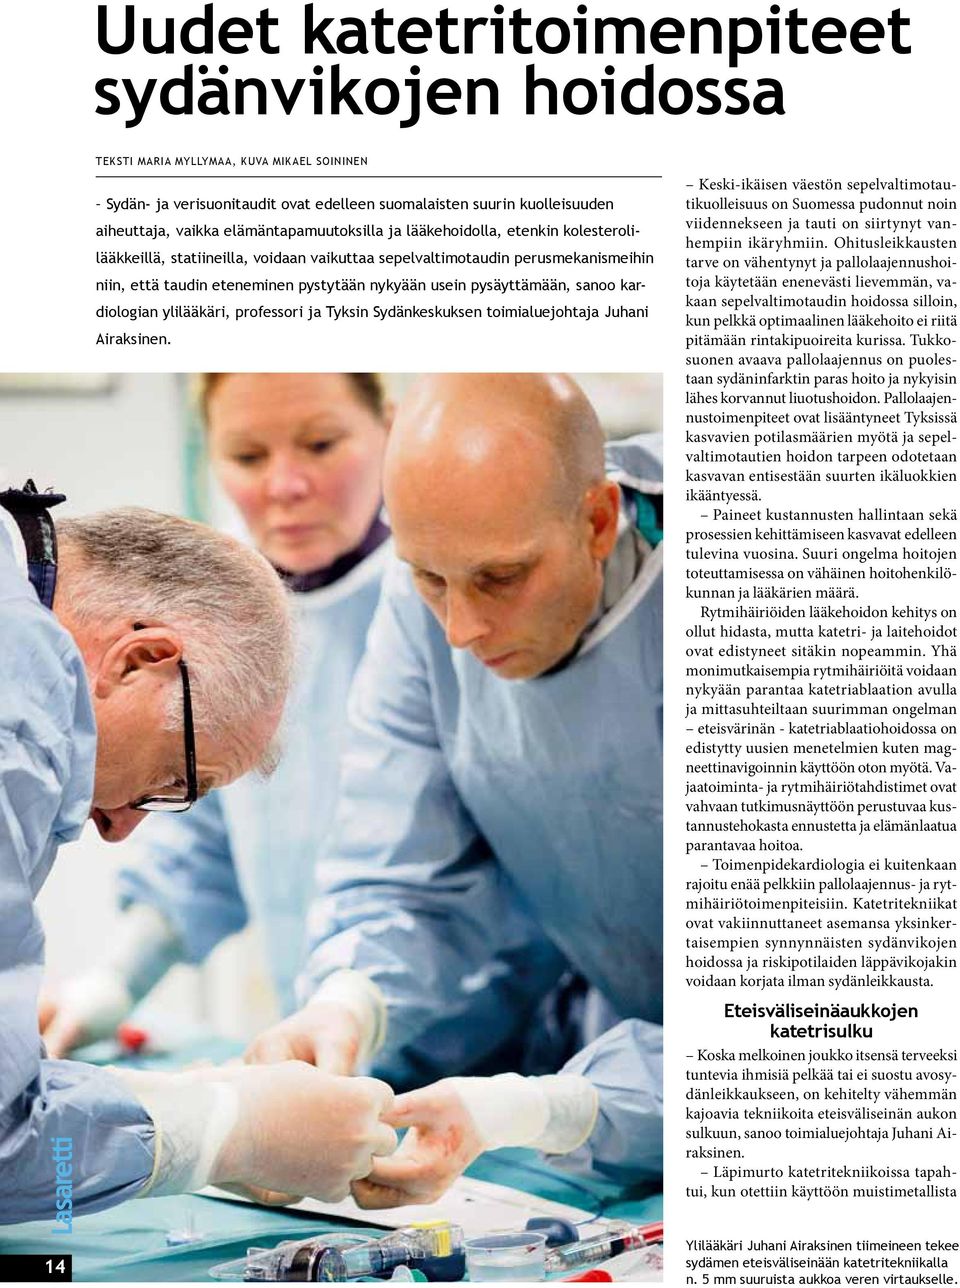 pysäyttämään, sanoo kardiologian ylilääkäri, professori ja Tyksin Sydänkeskuksen toimialuejohtaja Juhani Airaksinen.